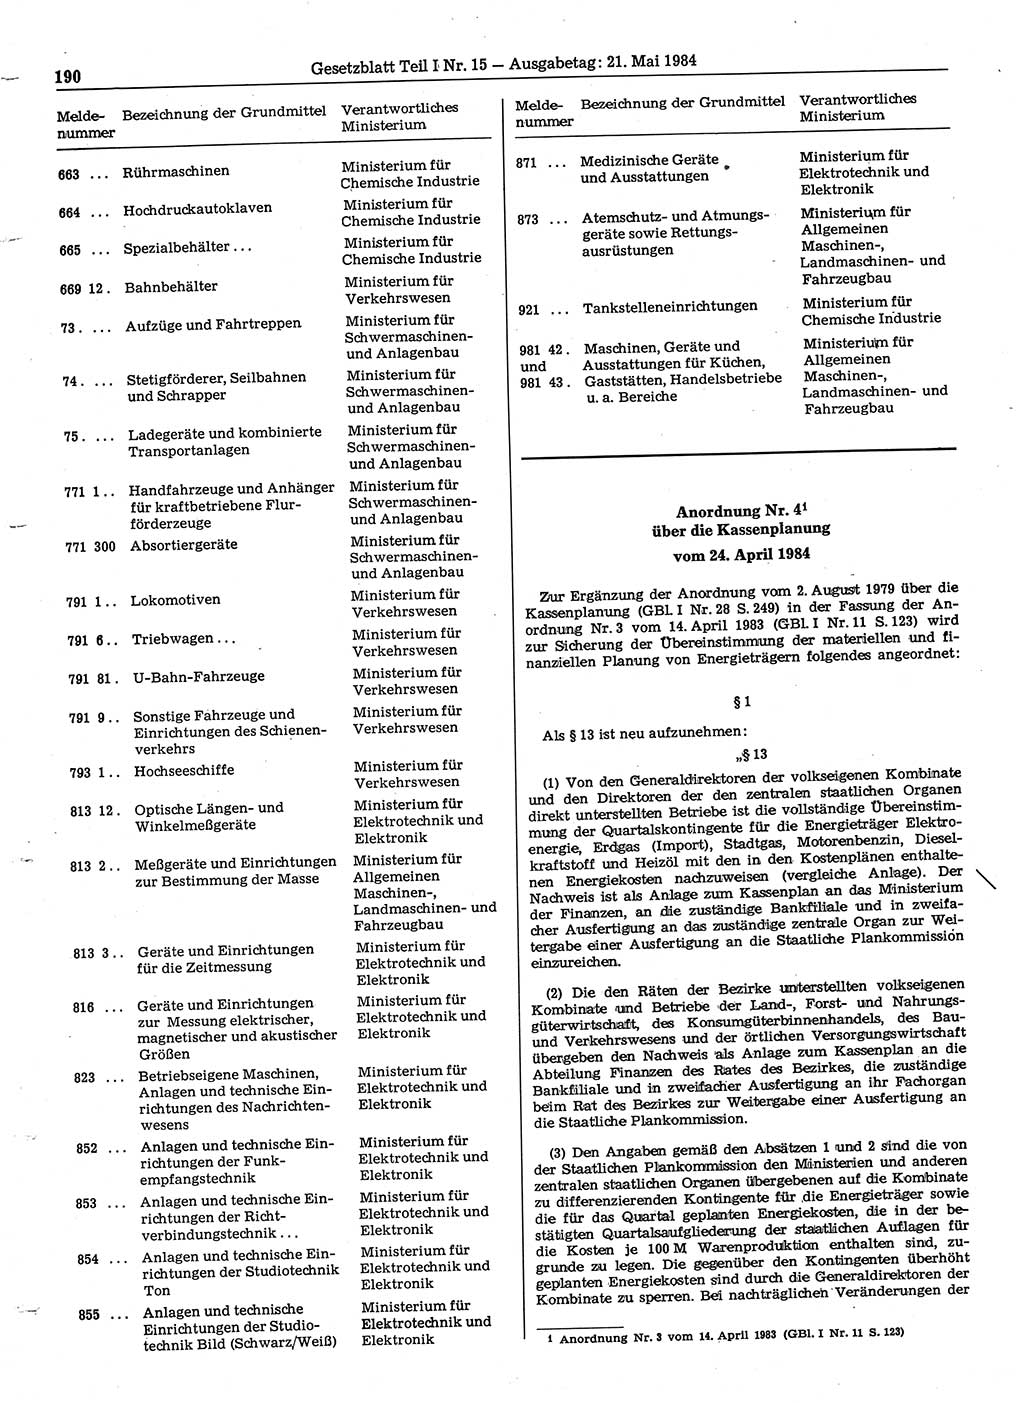 Gesetzblatt (GBl.) der Deutschen Demokratischen Republik (DDR) Teil Ⅰ 1984, Seite 190 (GBl. DDR Ⅰ 1984, S. 190)